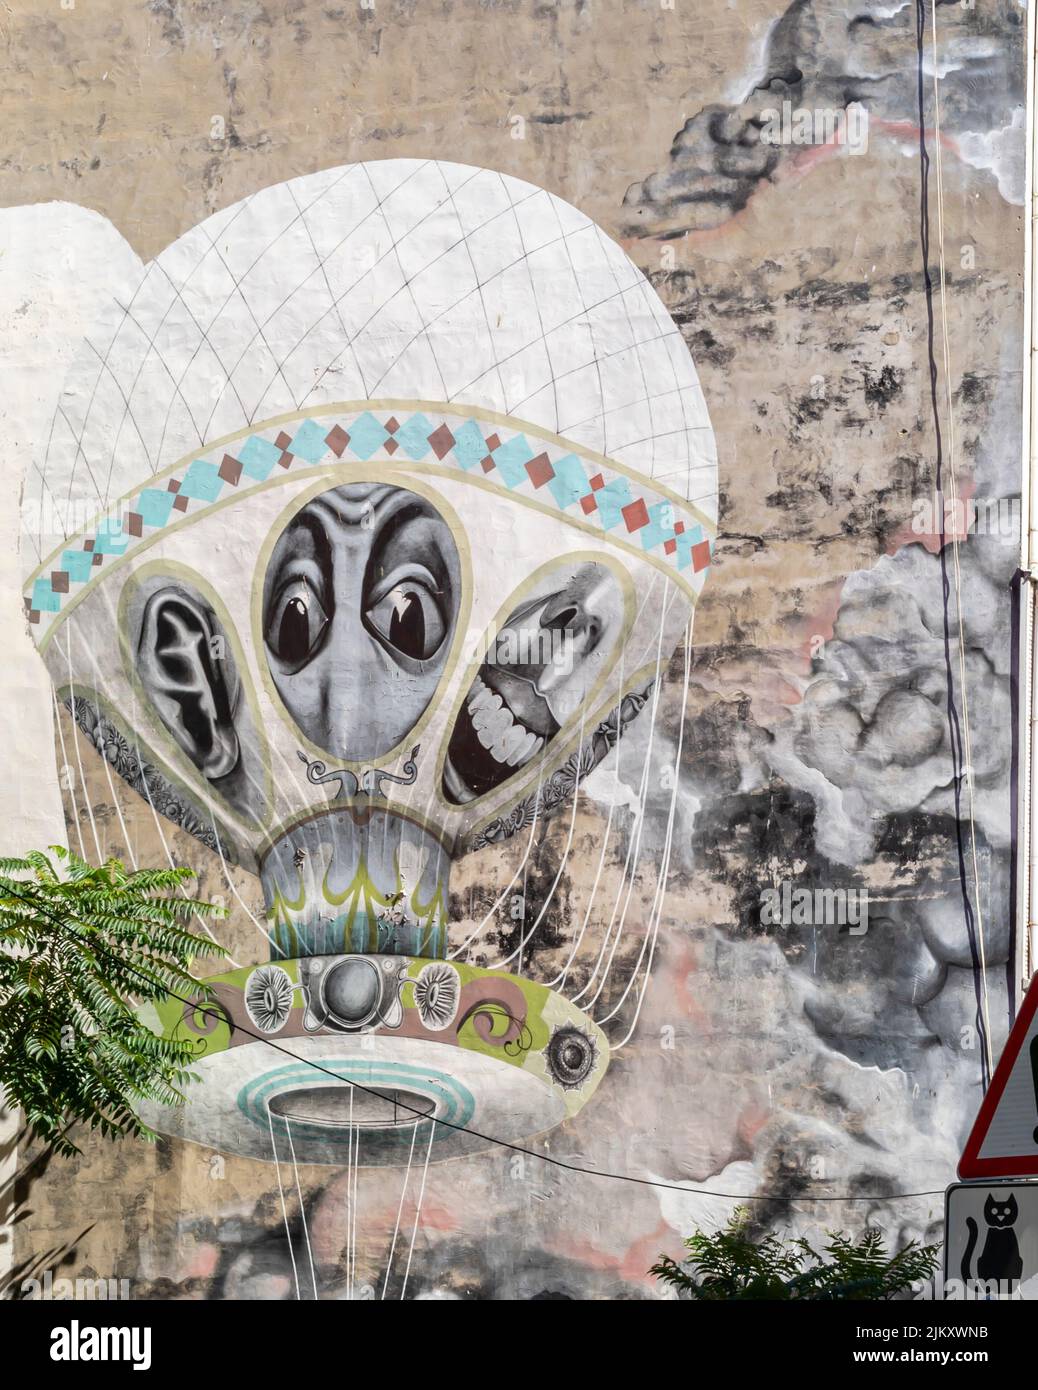 Arte callejero, mural del artista brasileño Claudio Ethos que representa globo de aire caliente con caras extrañas y distorsionadas, distrito Kadiköy de Estambul, Turquía Foto de stock